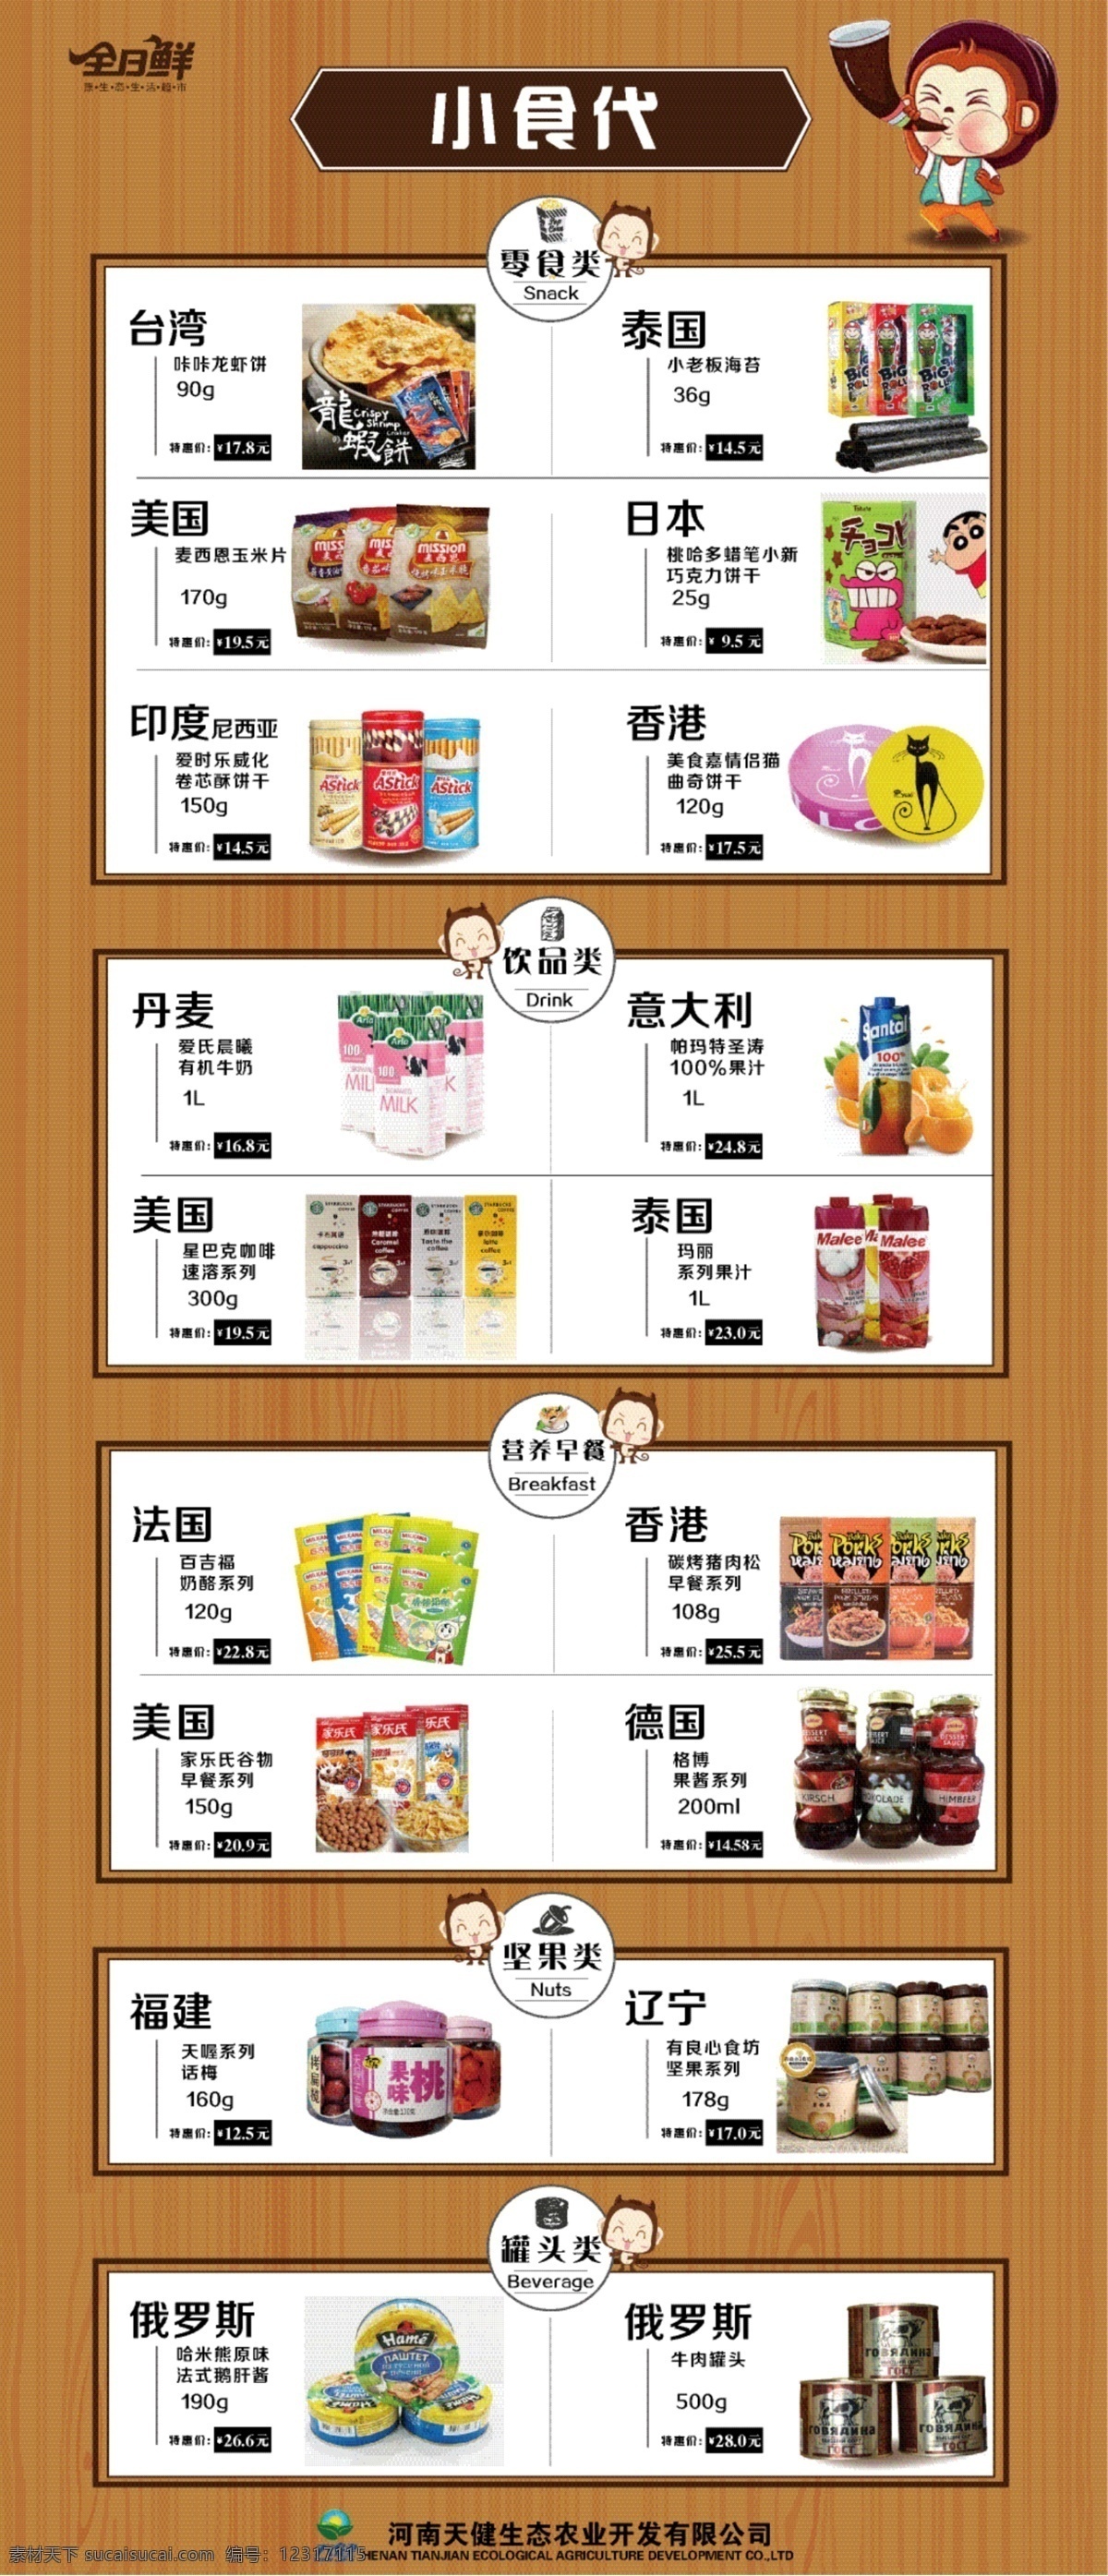 进口食品 海报 俄罗斯 美国 日本 坚果 罐头 零食 白色